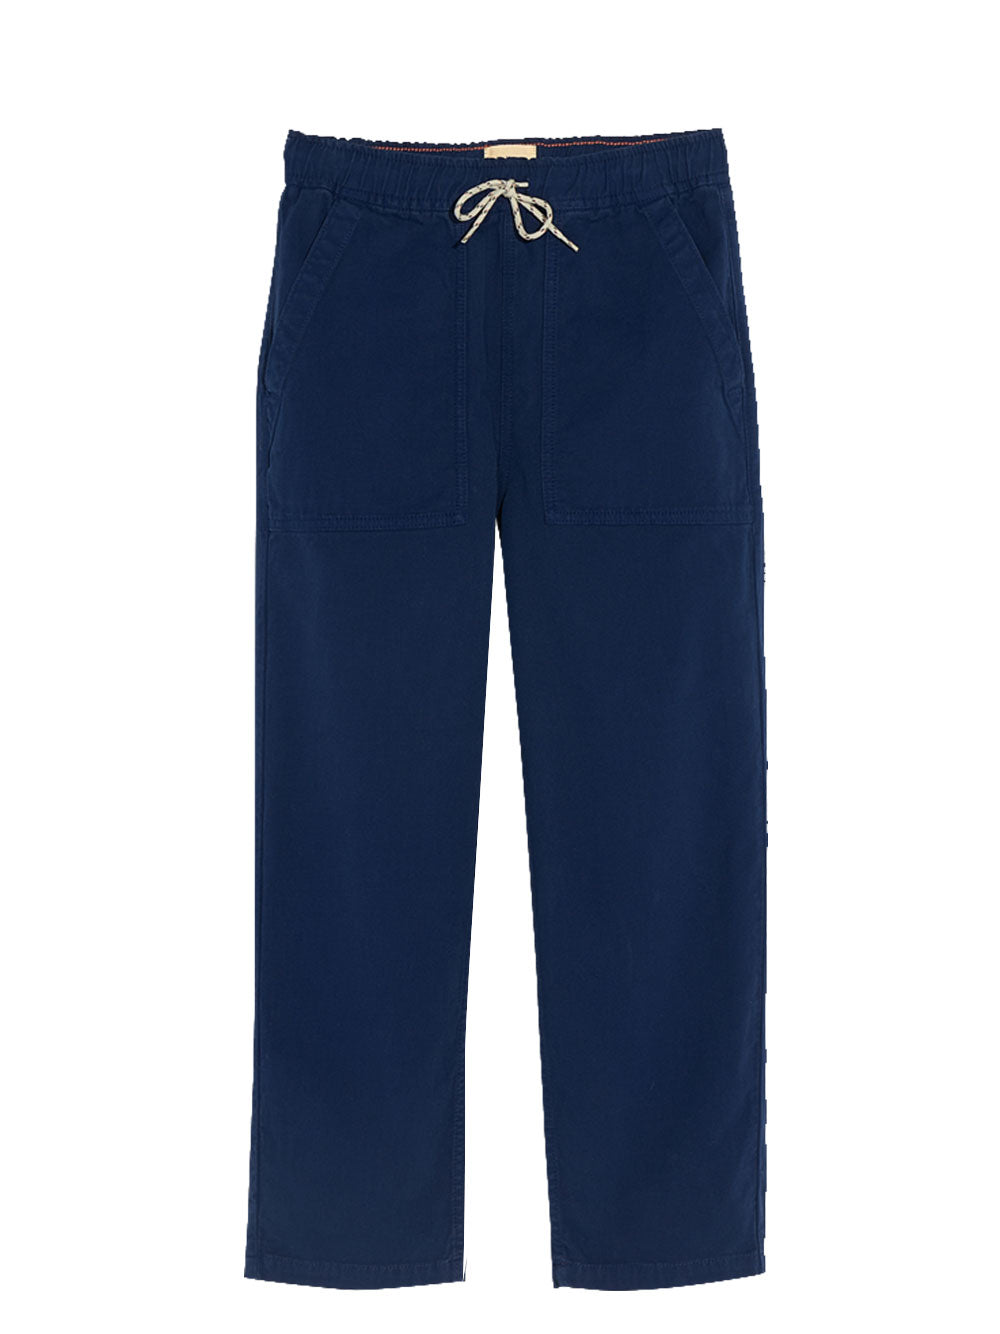 Argo cotton cargo pants in blue - Molo